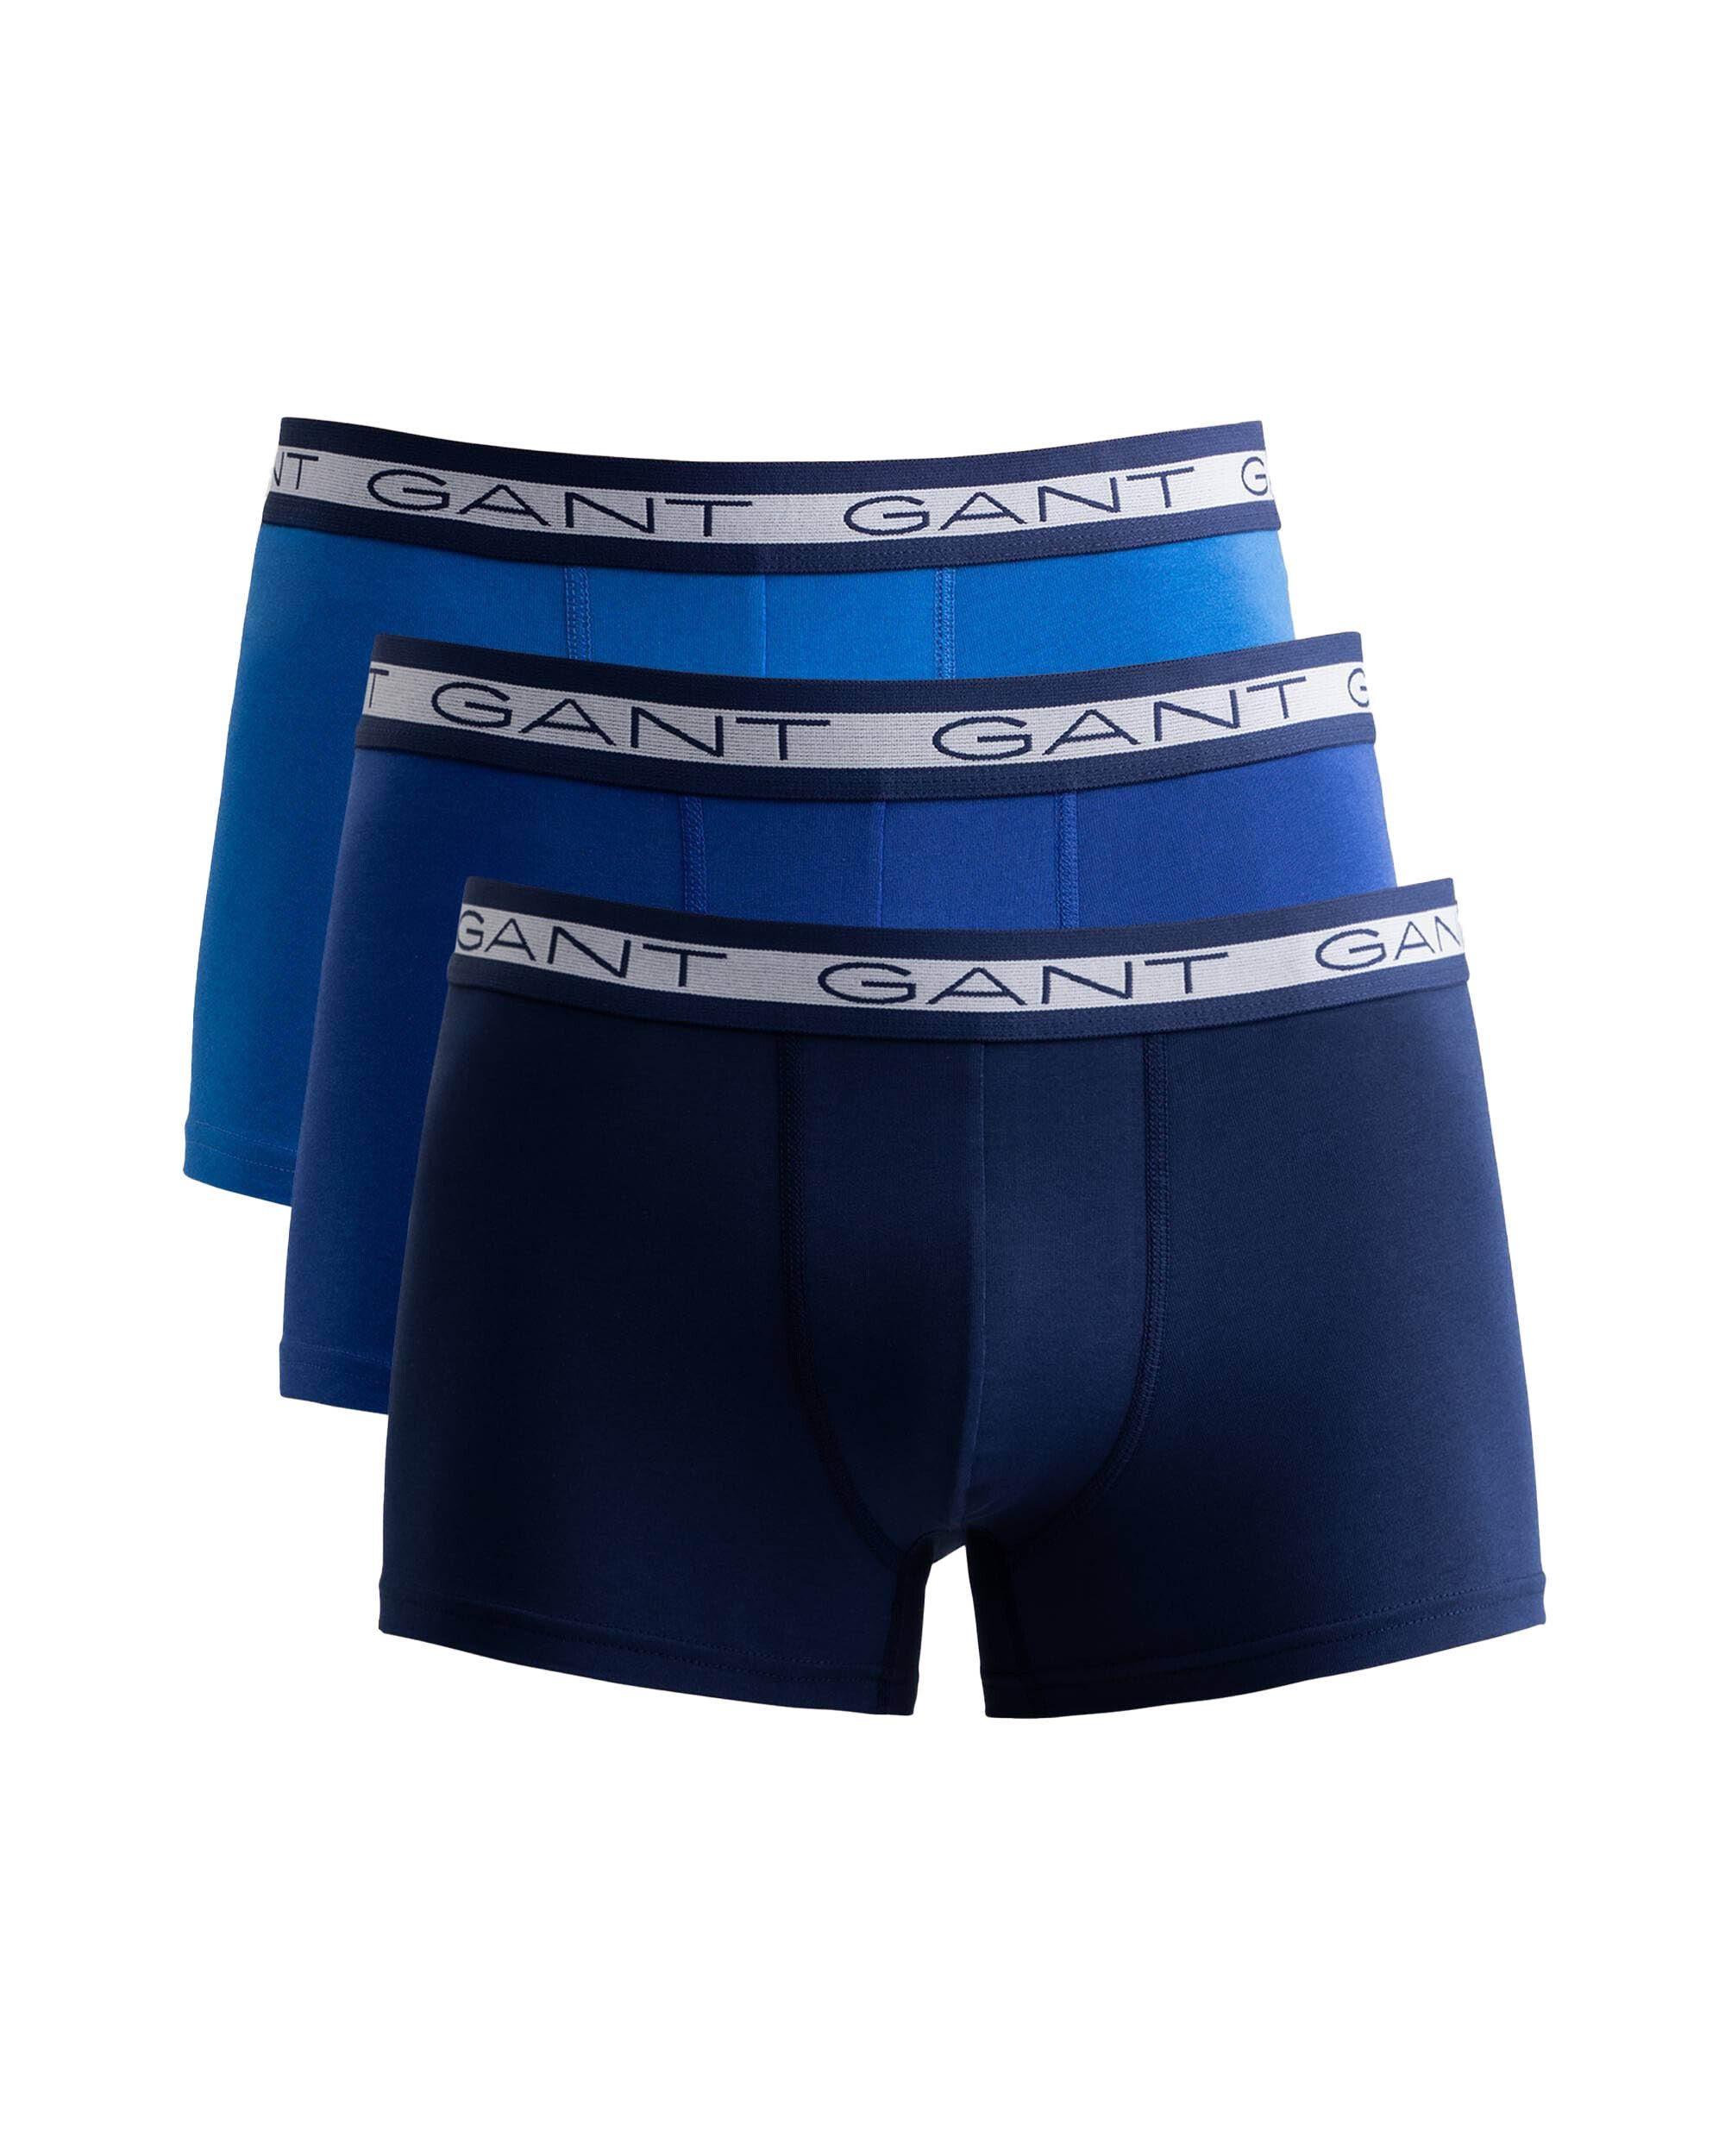 Gant Boxer Herren Boxer Shorts, 3er Pack - Trunks, Cotton Blau